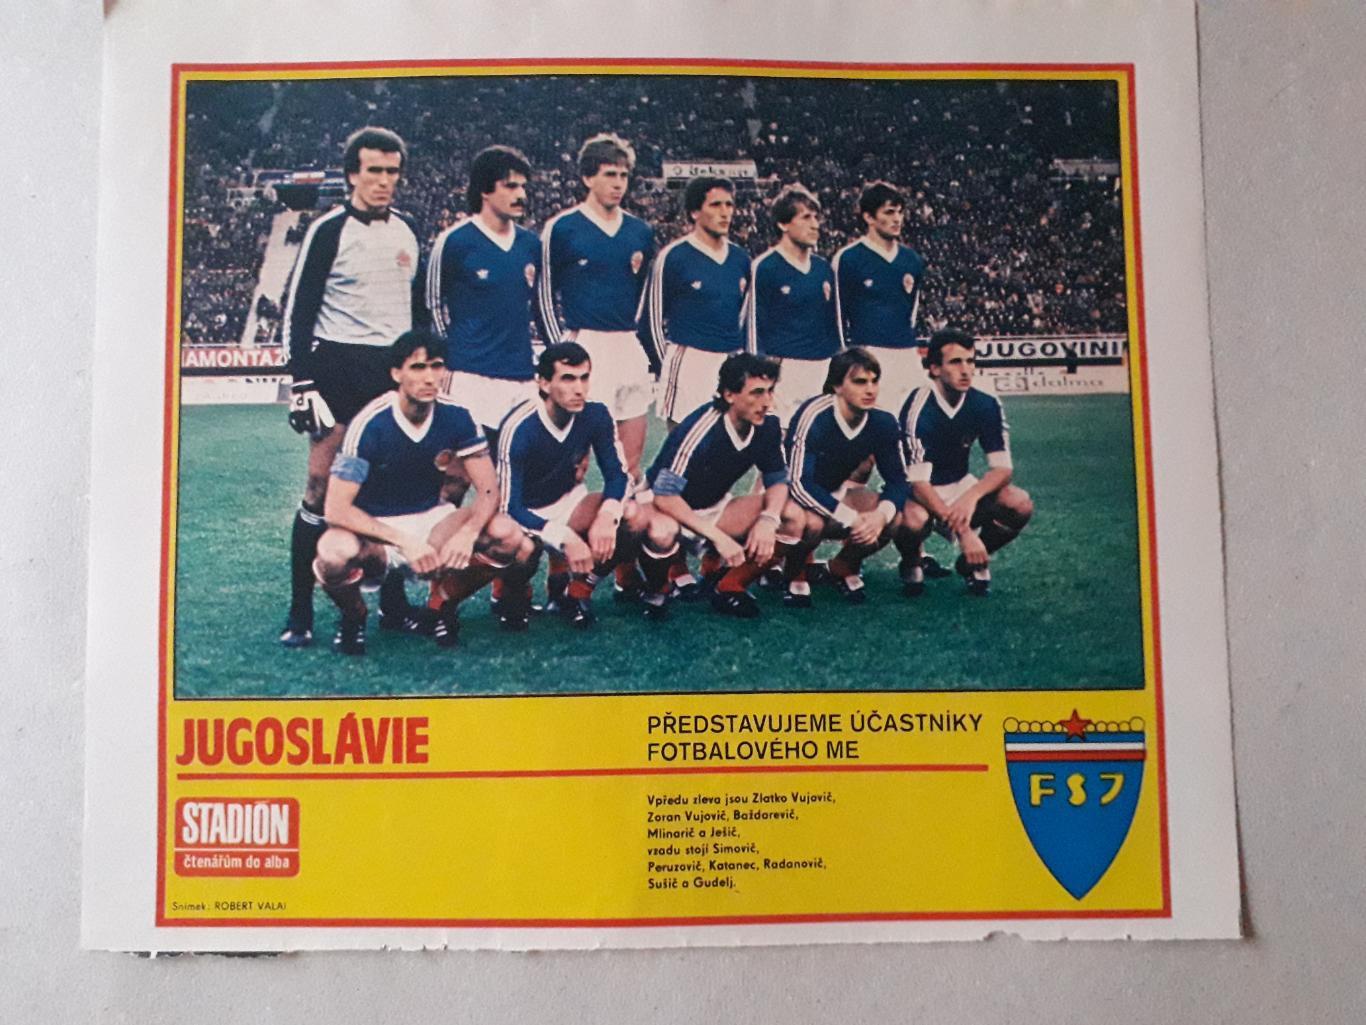 Плакат из журнала Stadion- Jugoslavie